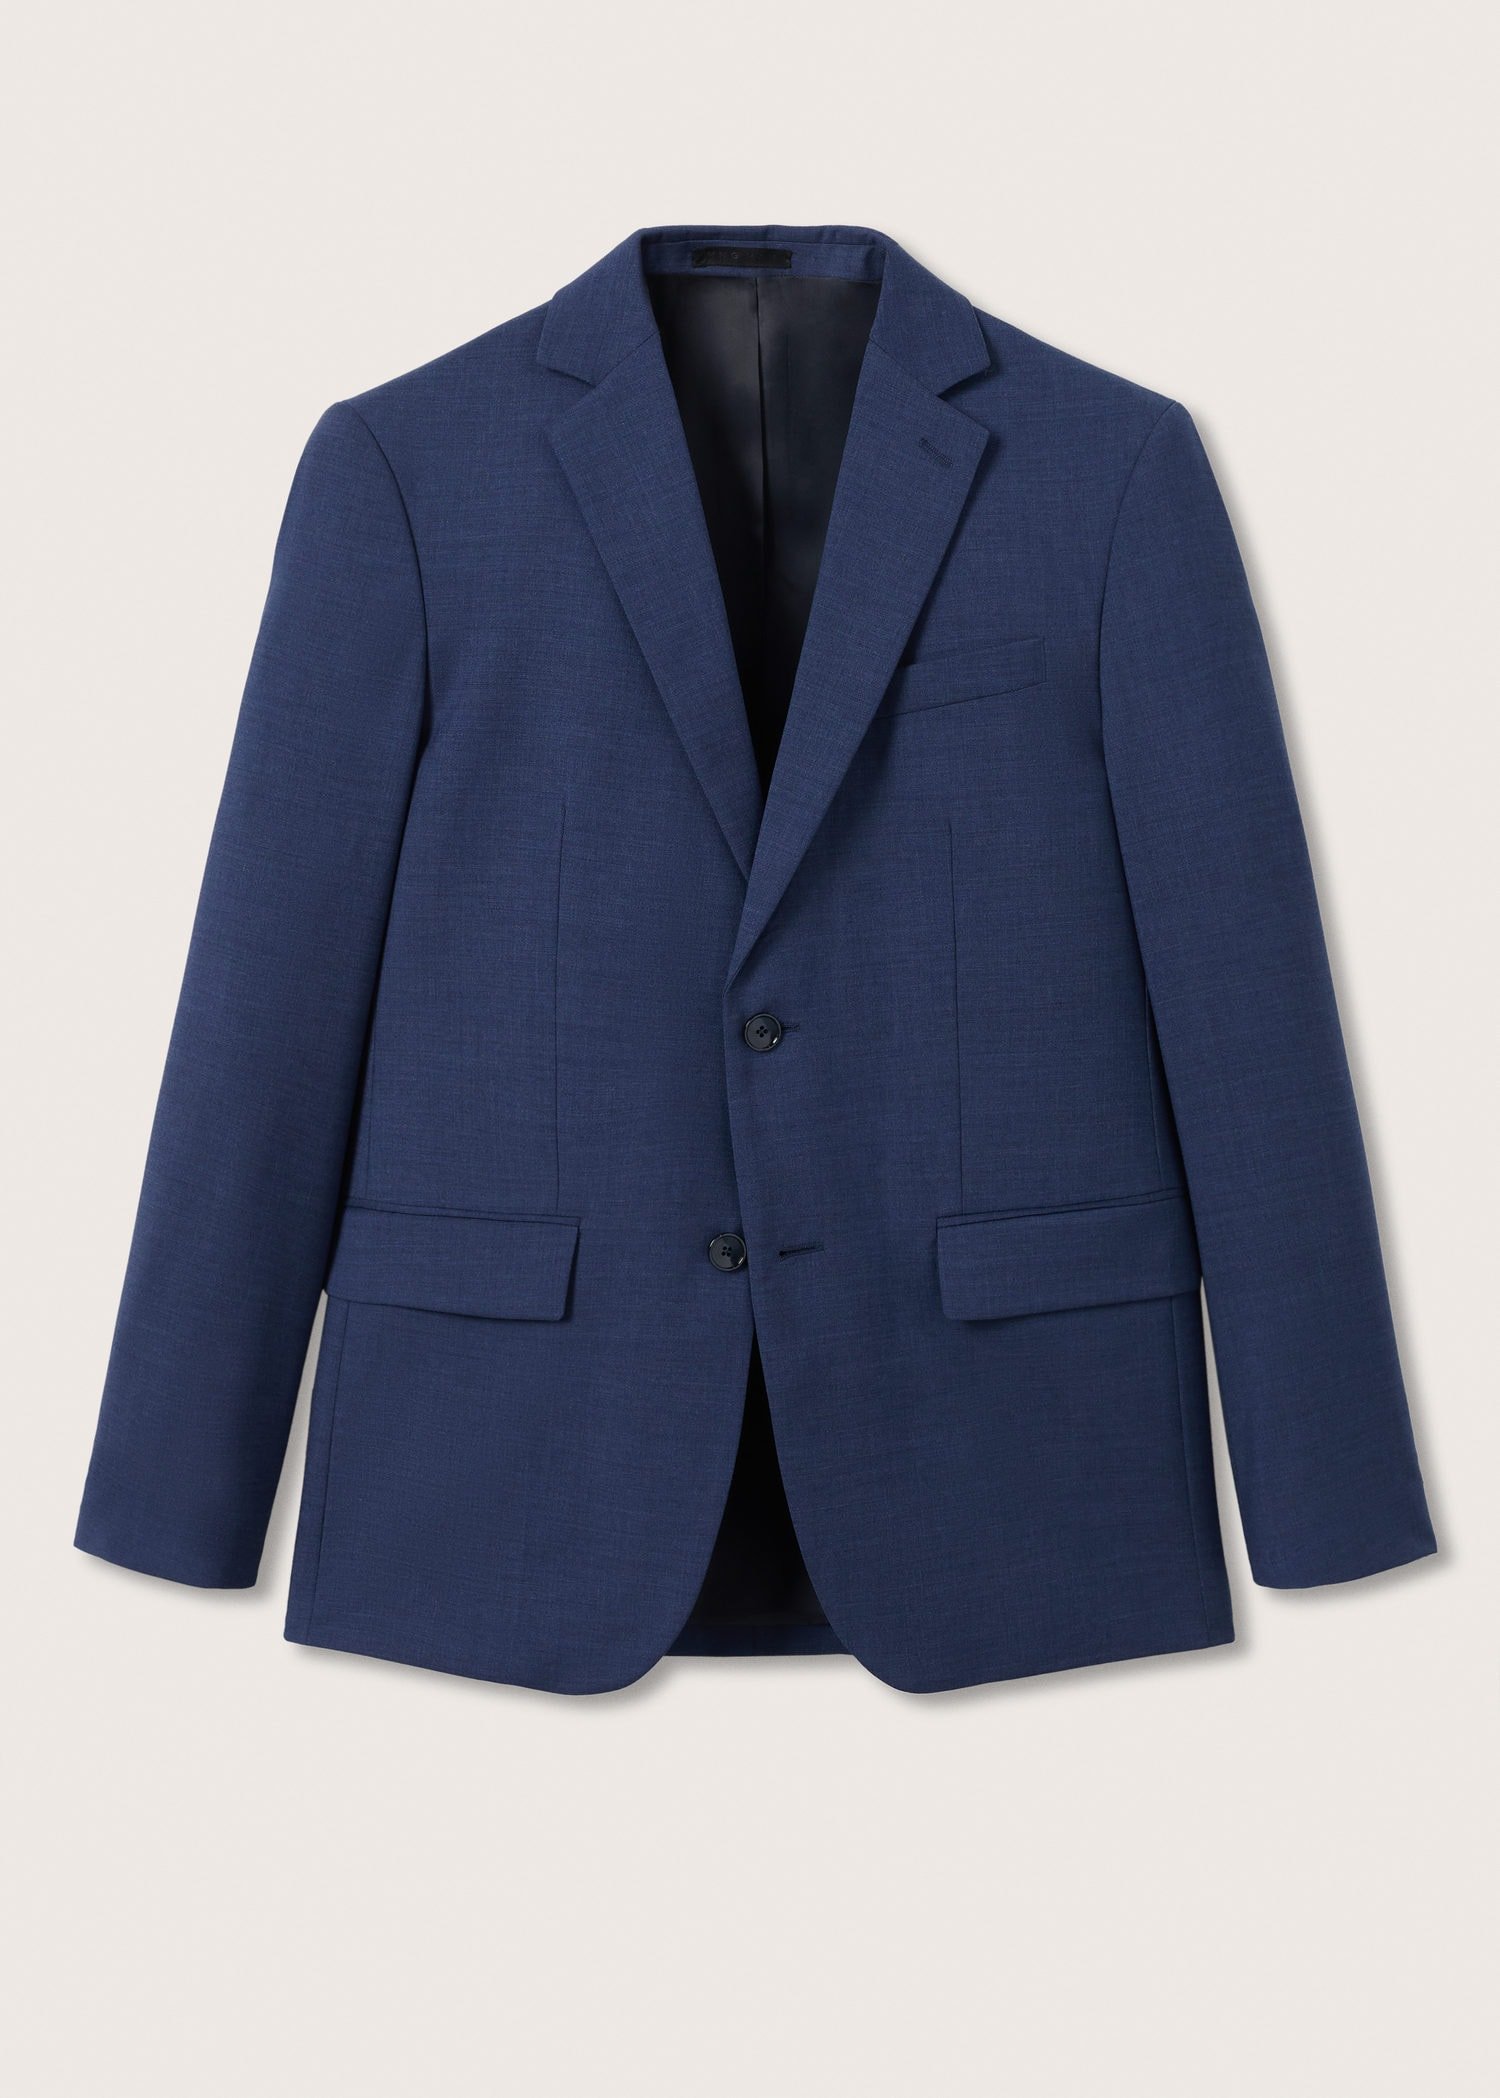 100% virgin wool suit blazer - Men